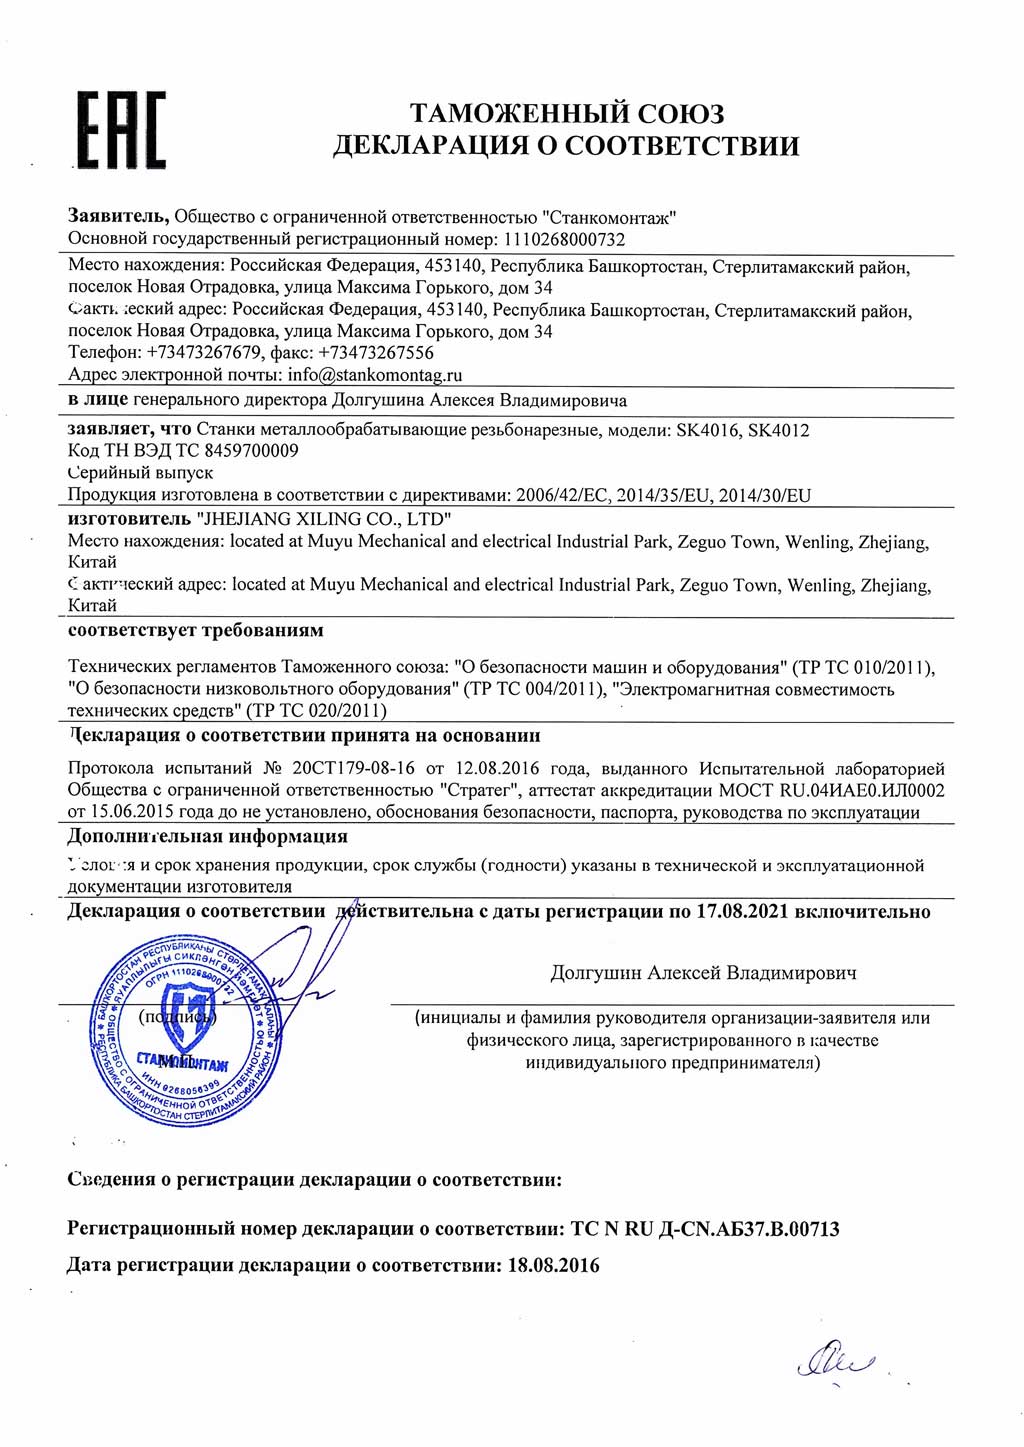 Сертификат на резьбонарезные станки SK4012, SK4016